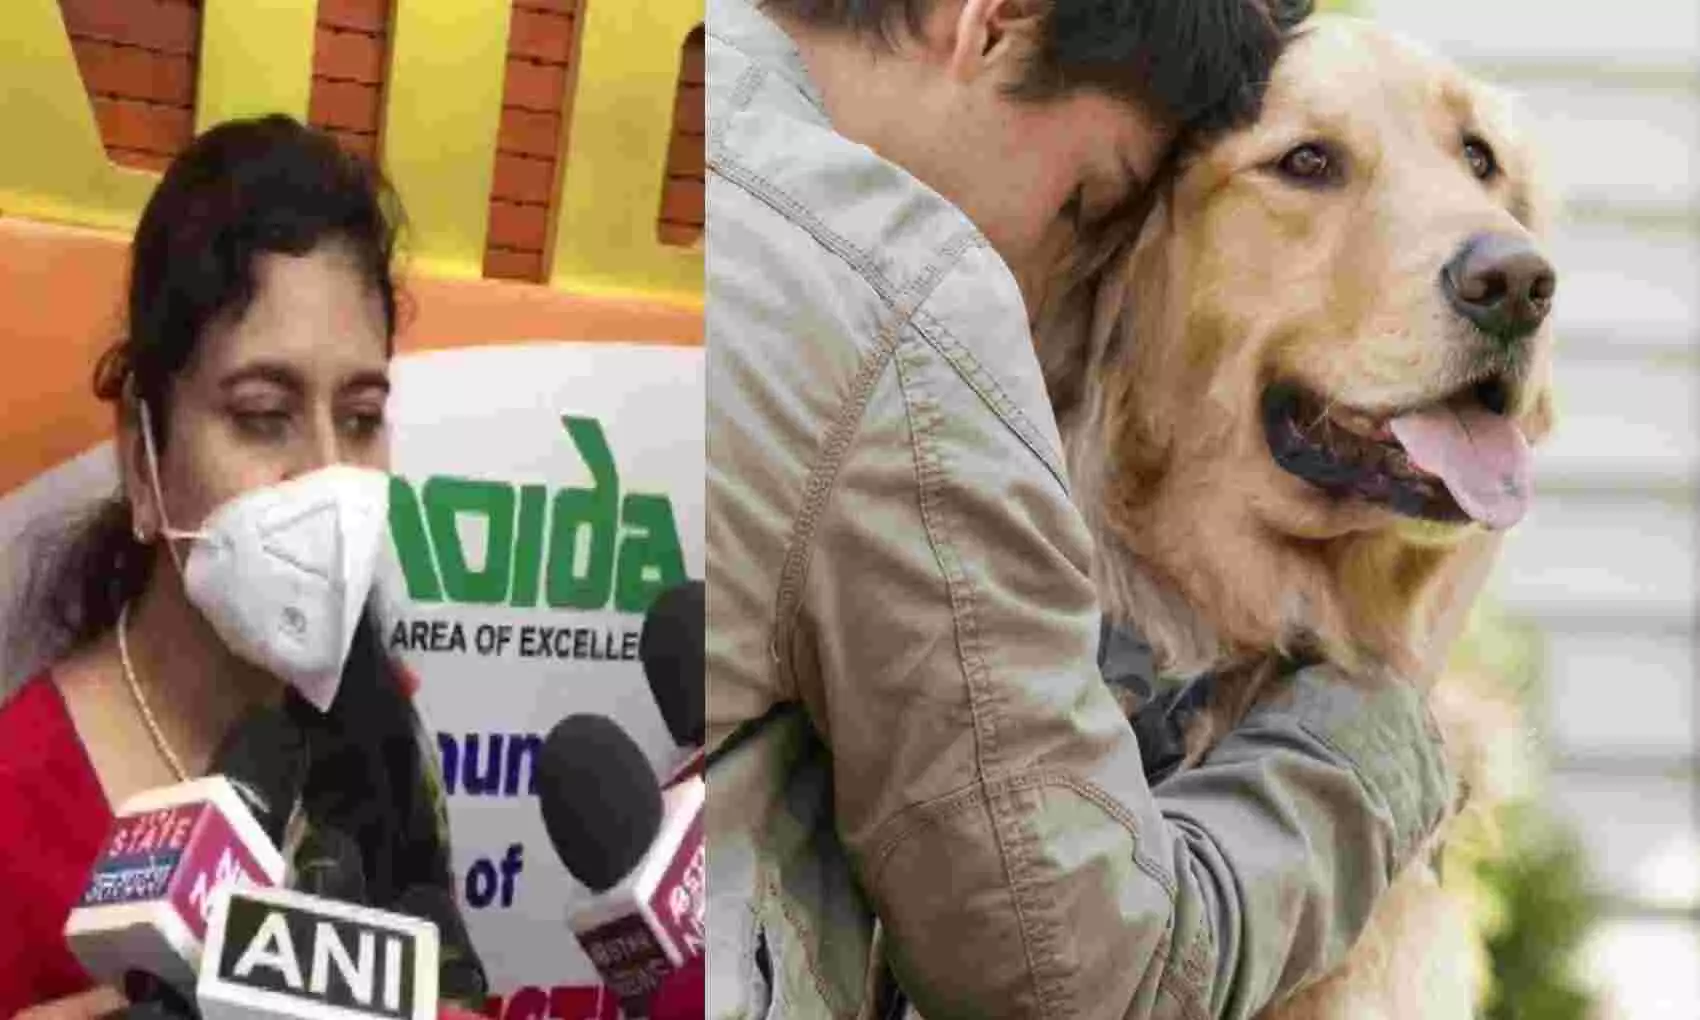 Noida में आपके कुत्ते ने काटा तो देना होगा इतना जुर्माना और करना होगा इलाज, पालतू जानवरों के लिए नियम लागू